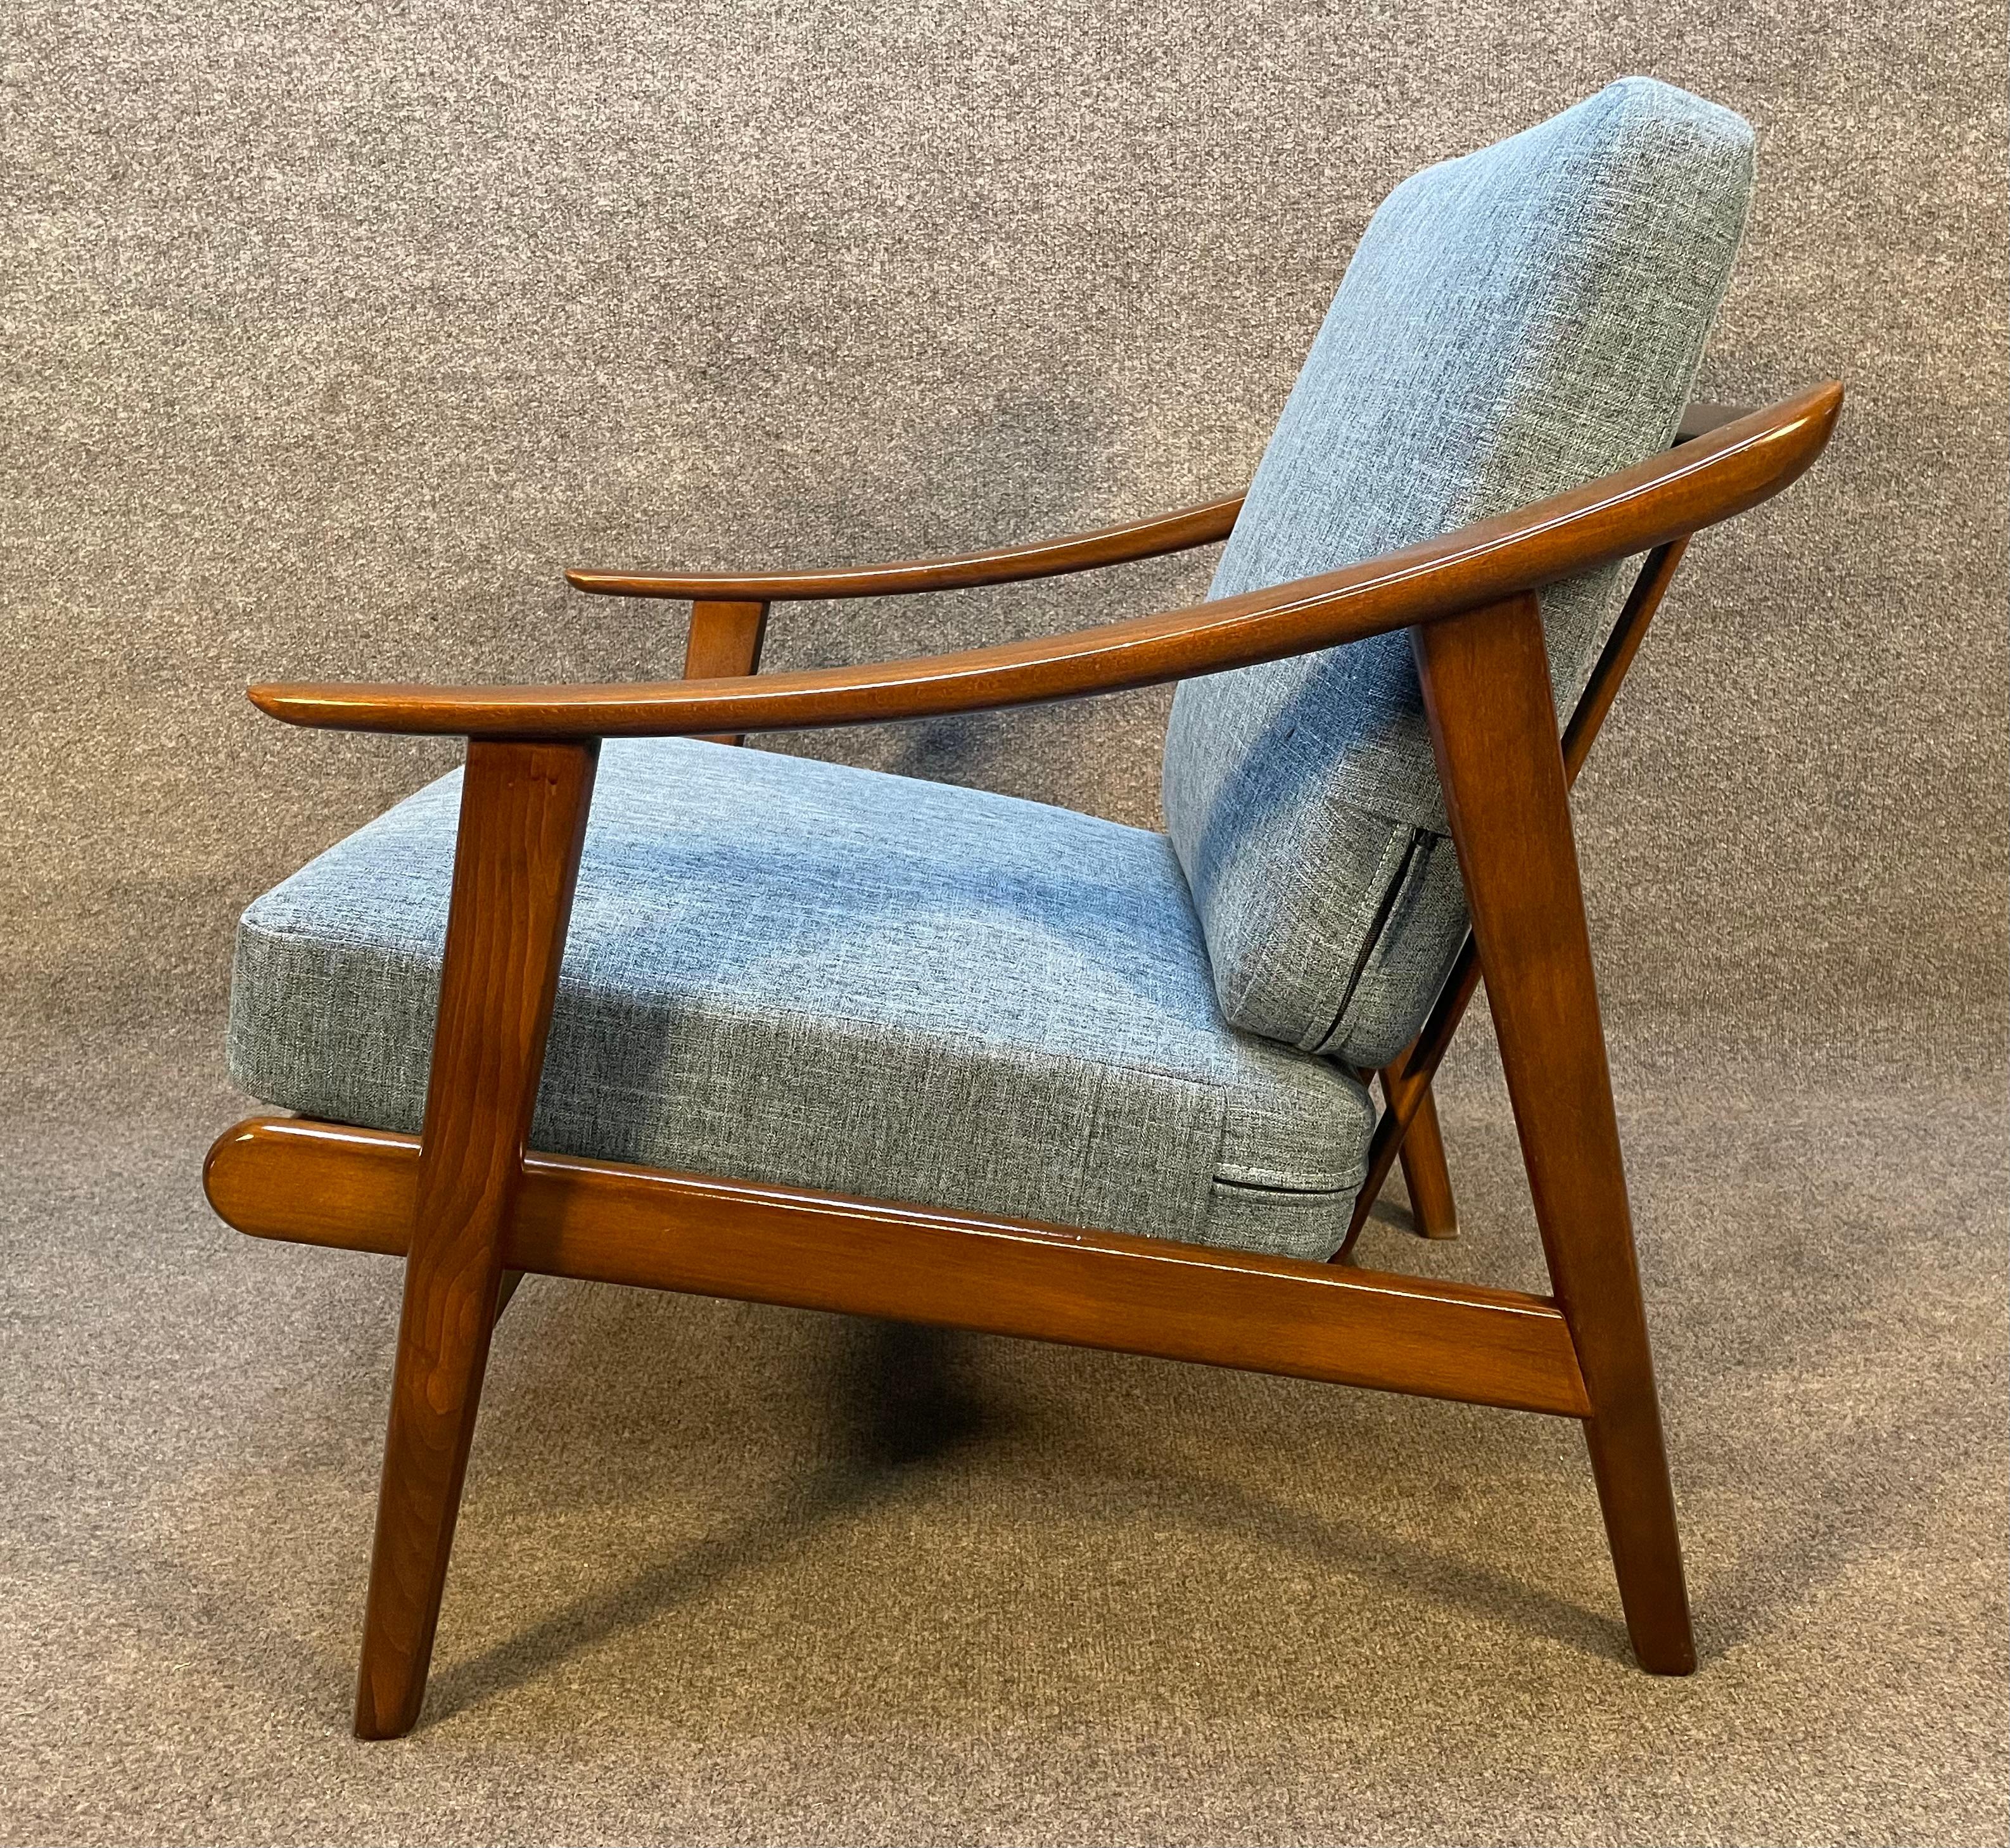 Voici un magnifique fauteuil moderne Scandinavian en bouleau teinté couleur noyer fabriqué au Danemark dans les années 1960.
Cette chaise confortable, récemment importée d'Europe, présente un cadre sculptural nettoyé et huilé rappelant le design de